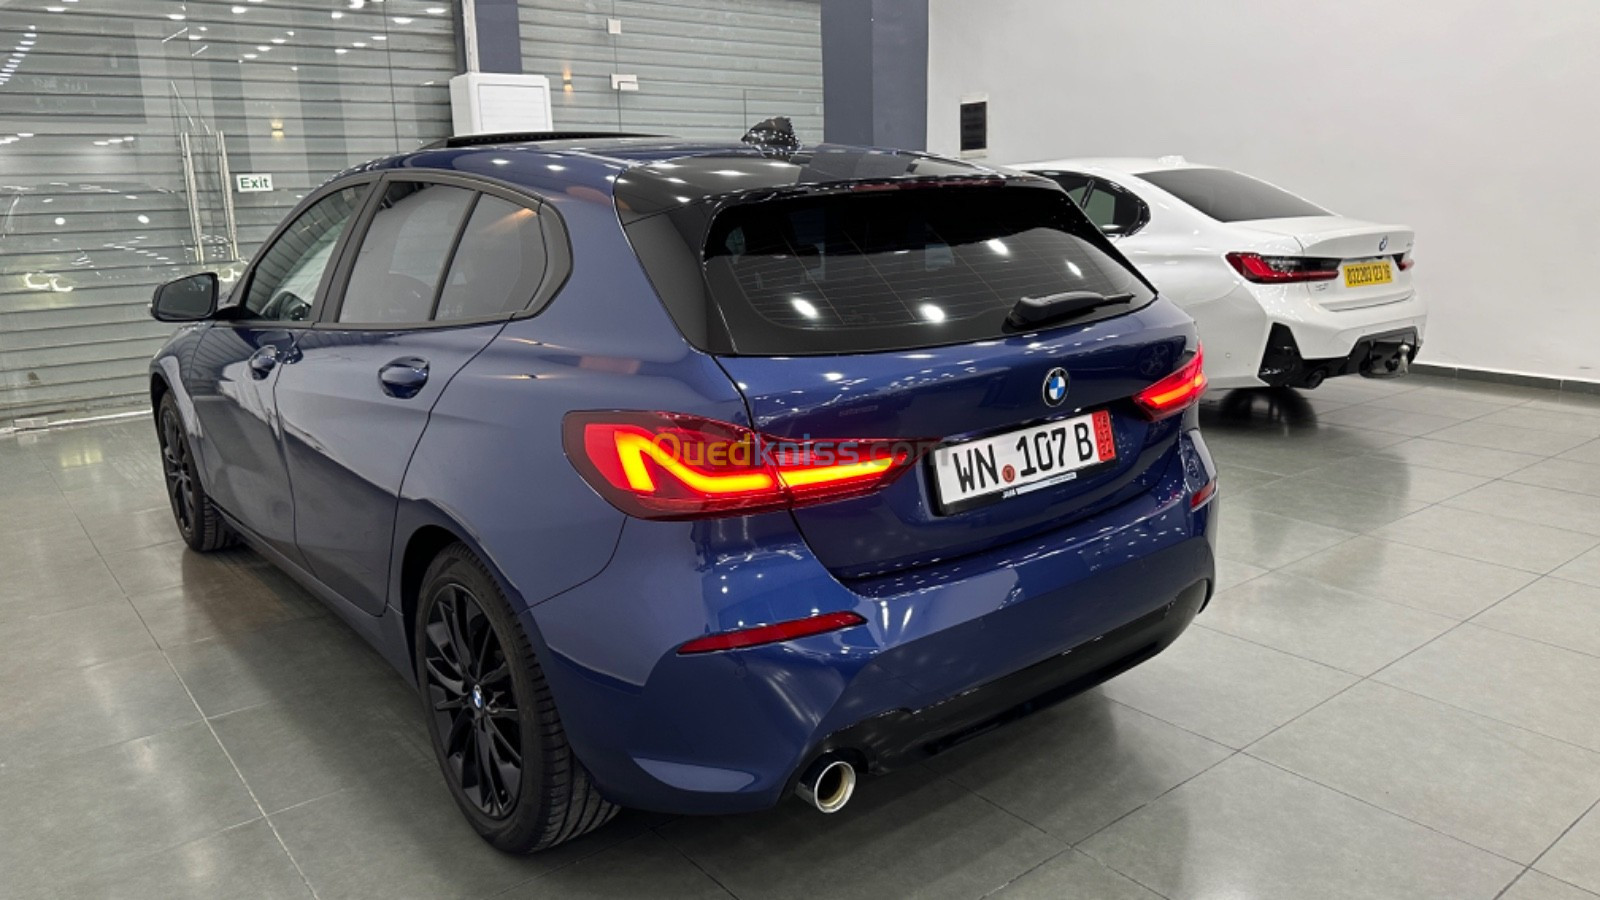 BMW Série 1 2022 Série 1